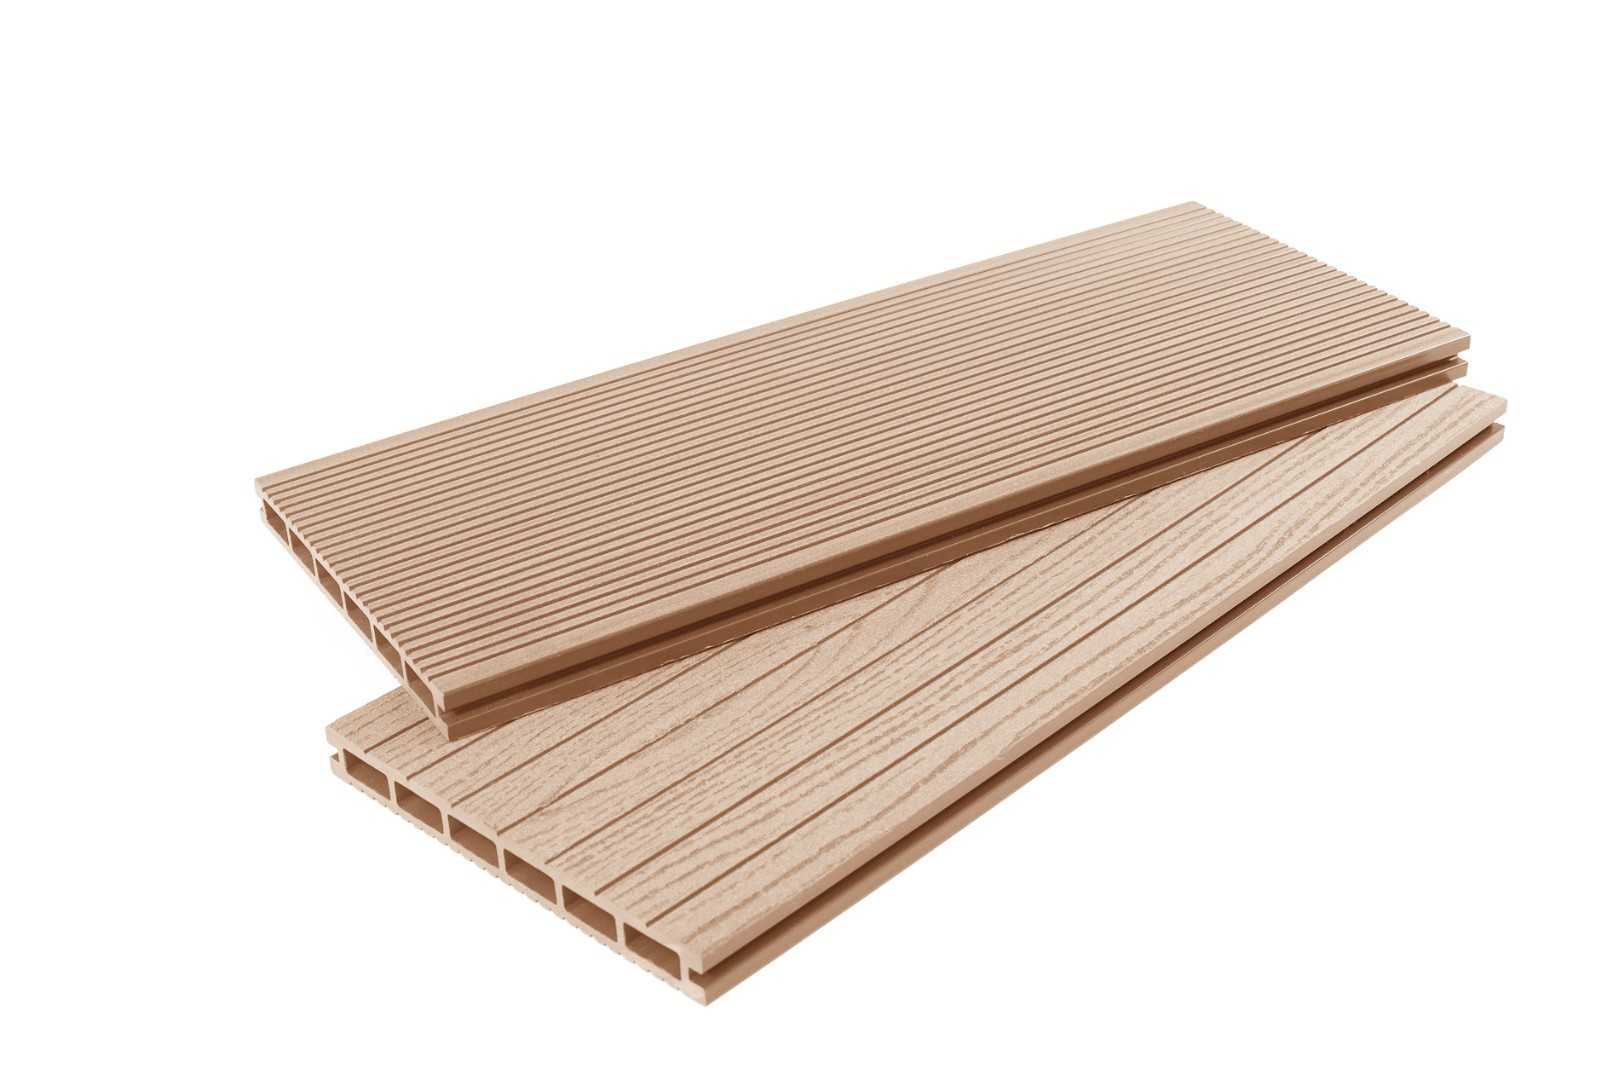 Террасная доска - это материал предназначенный для уличного применения Изготавливается либо из древесно-полимерного композита, либо из массива твердых пород дерева